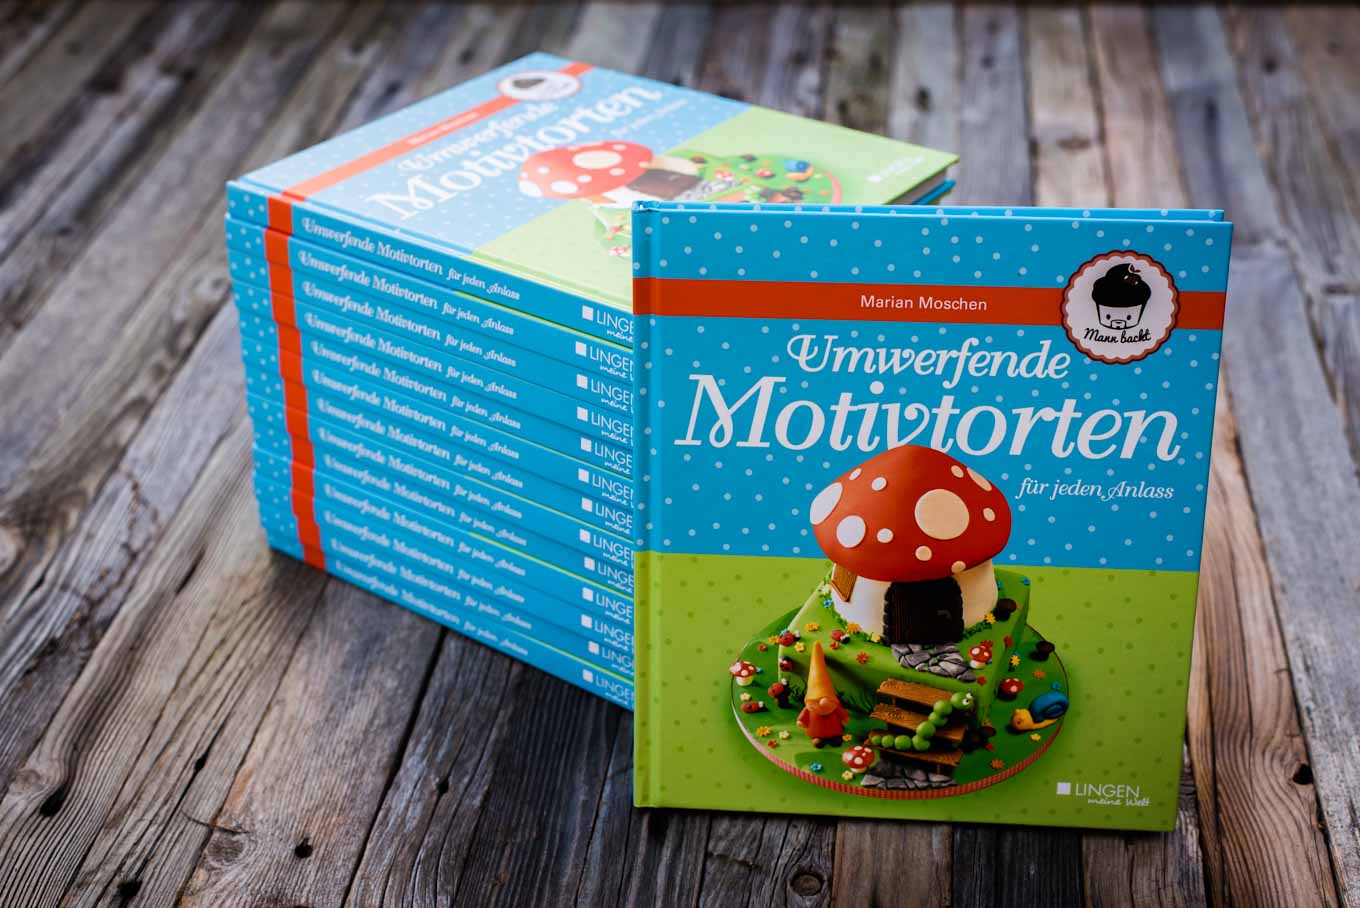 Mann backt Marian Moschen Umwerfende Motivtorten für jeden Anlass Lingen Verlag Motivtortenbuch Motivtorten Buch (1 von 8)